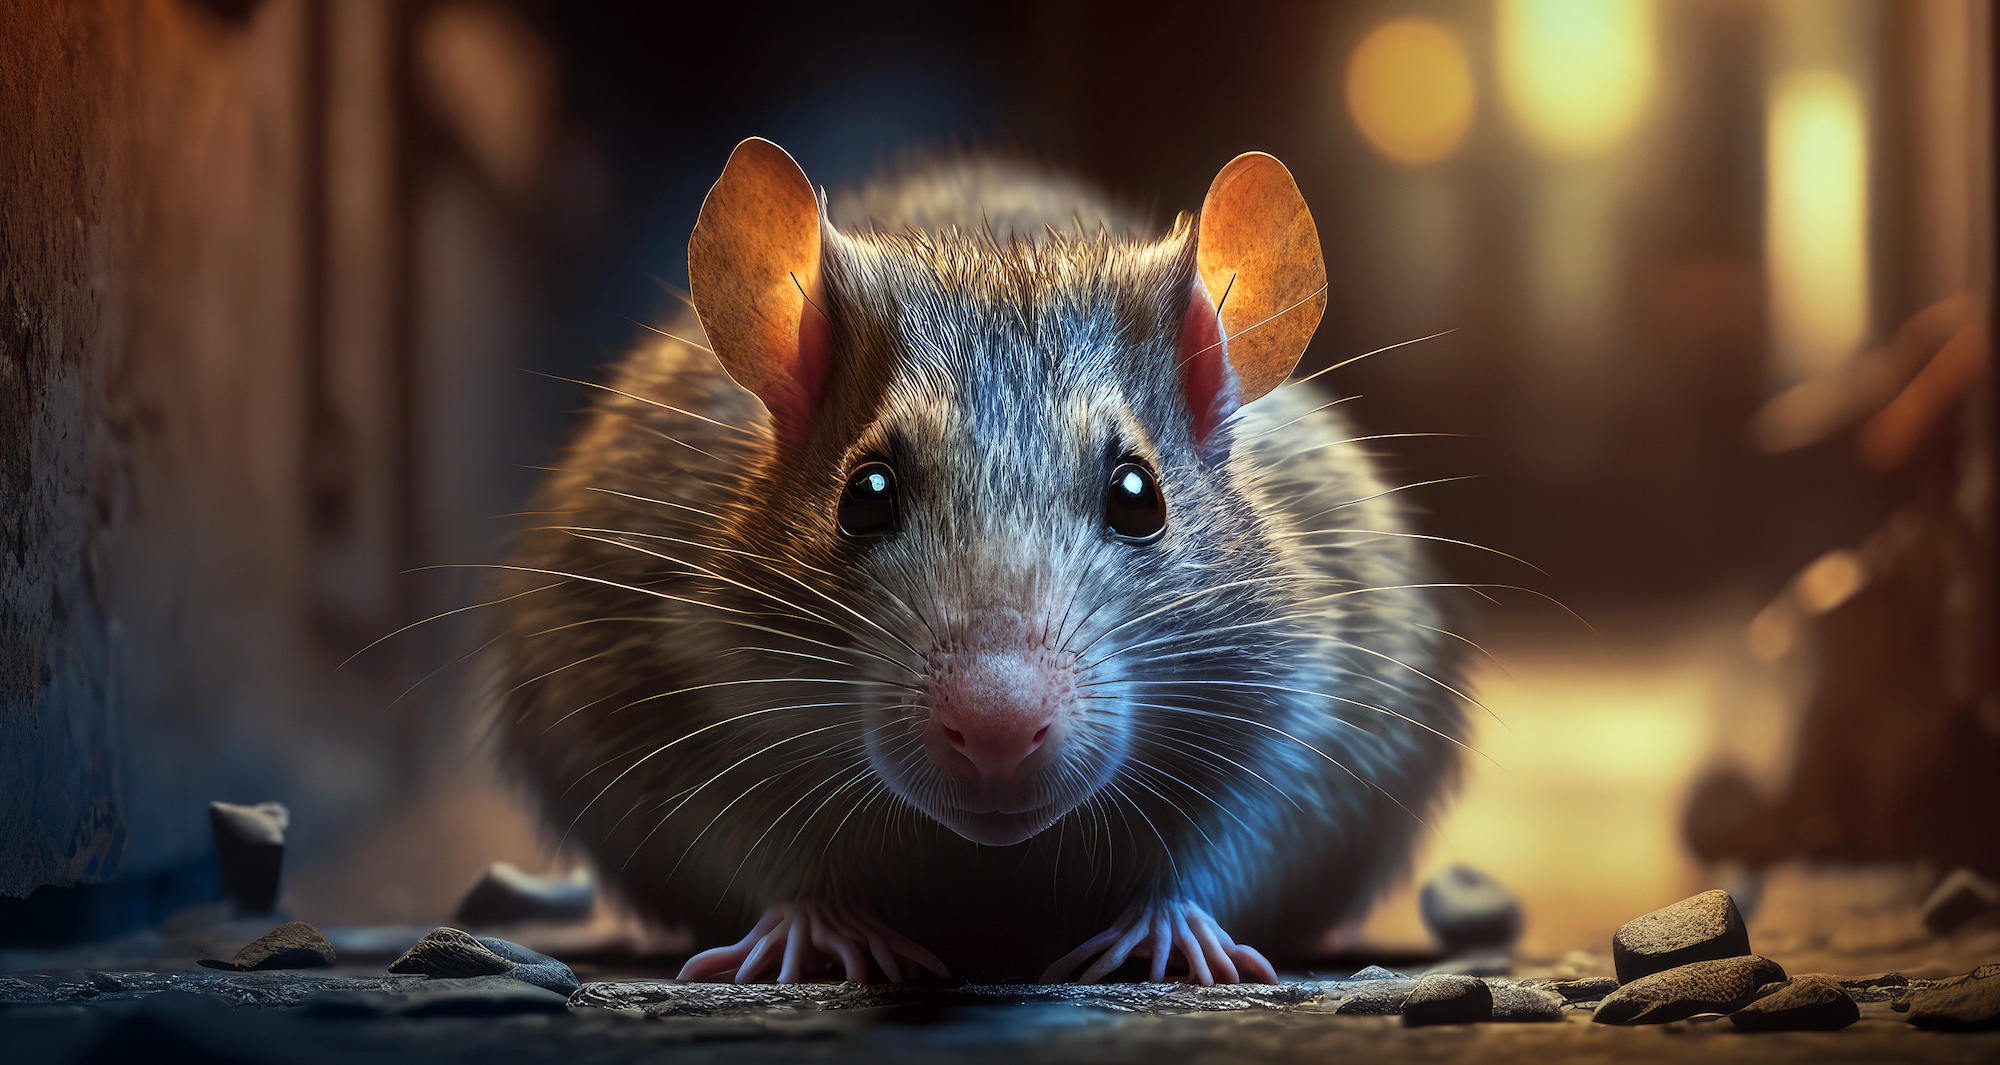 Des chercheurs du Howard Hughes Medical Institute (HHMI, États-Unis) montrent que les rats sont doués d’imagination. © Ed Felumero, Adobe Stock